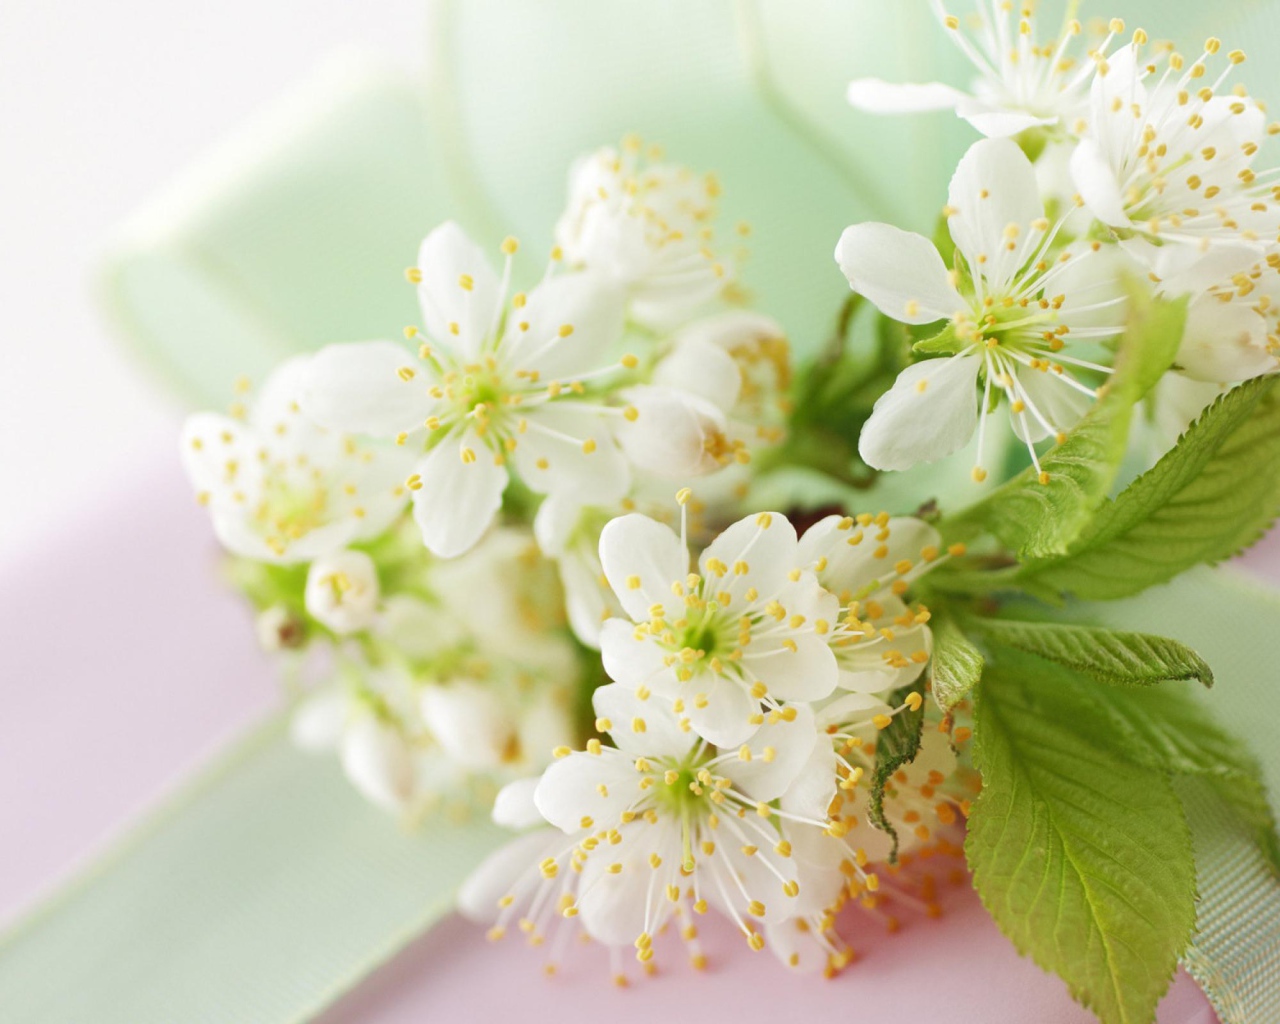 Белые цветы черешни с зелеными листьями на столе с лентой